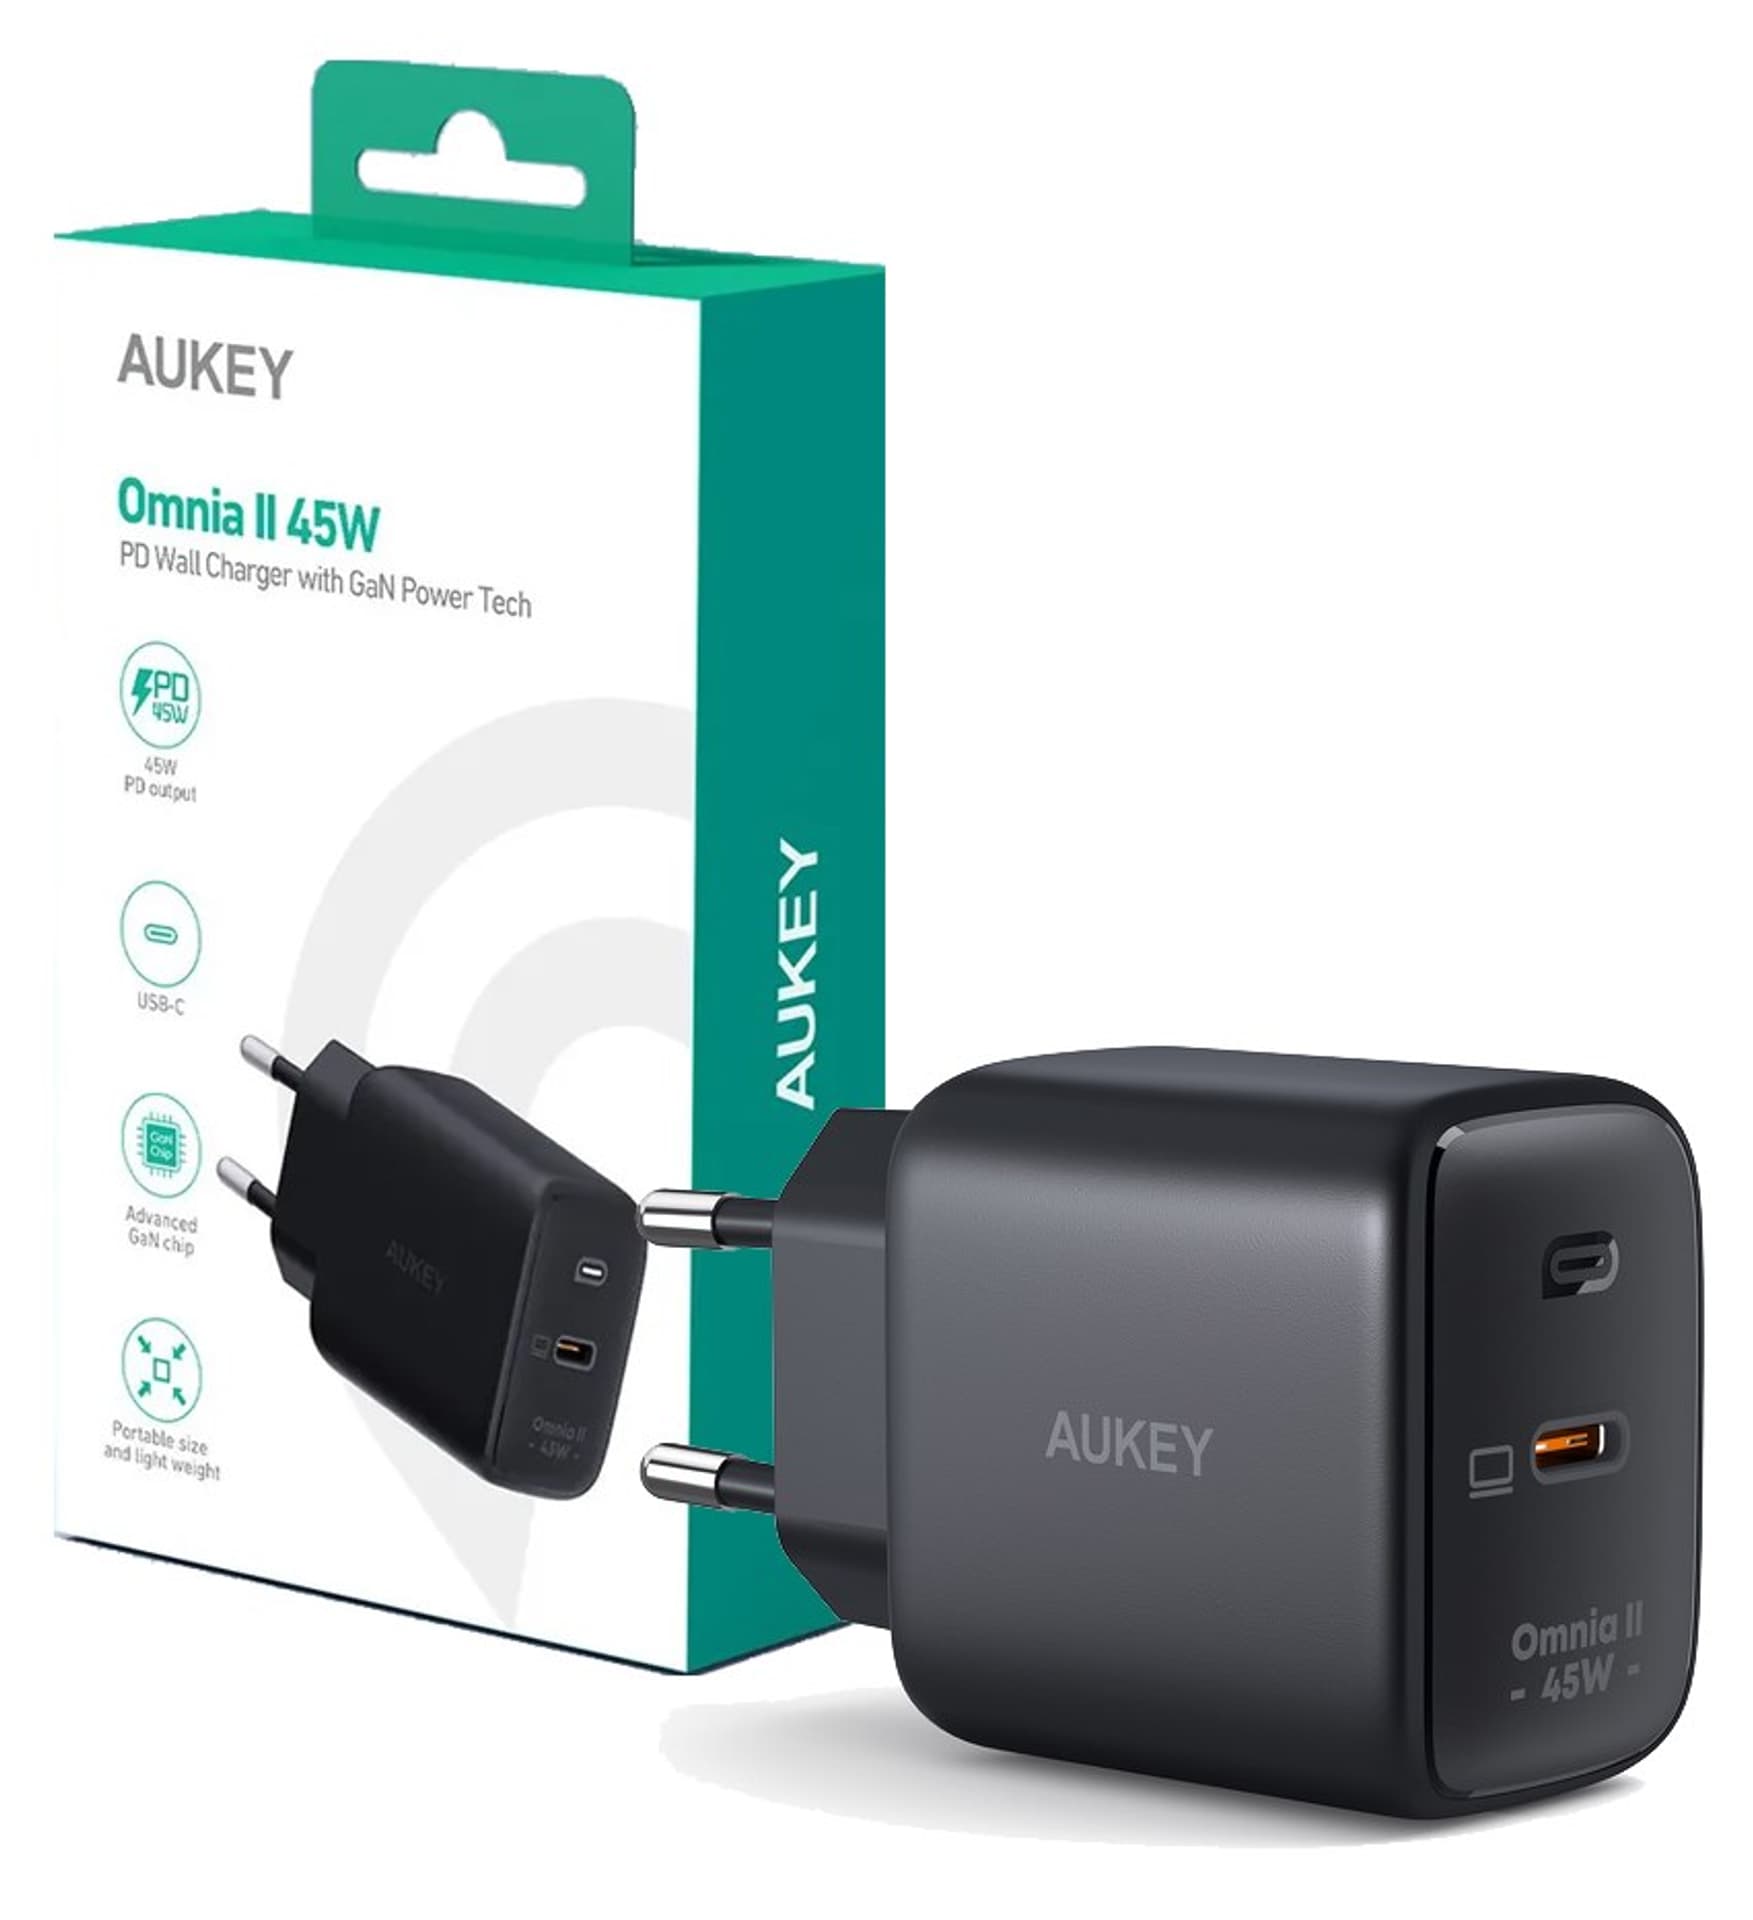 Aukey Ładowarka GaN 45W USB-C PD - darmowy odbiór w 22 miastach i bezpłatny zwrot Paczkomatem aż do 15 dni